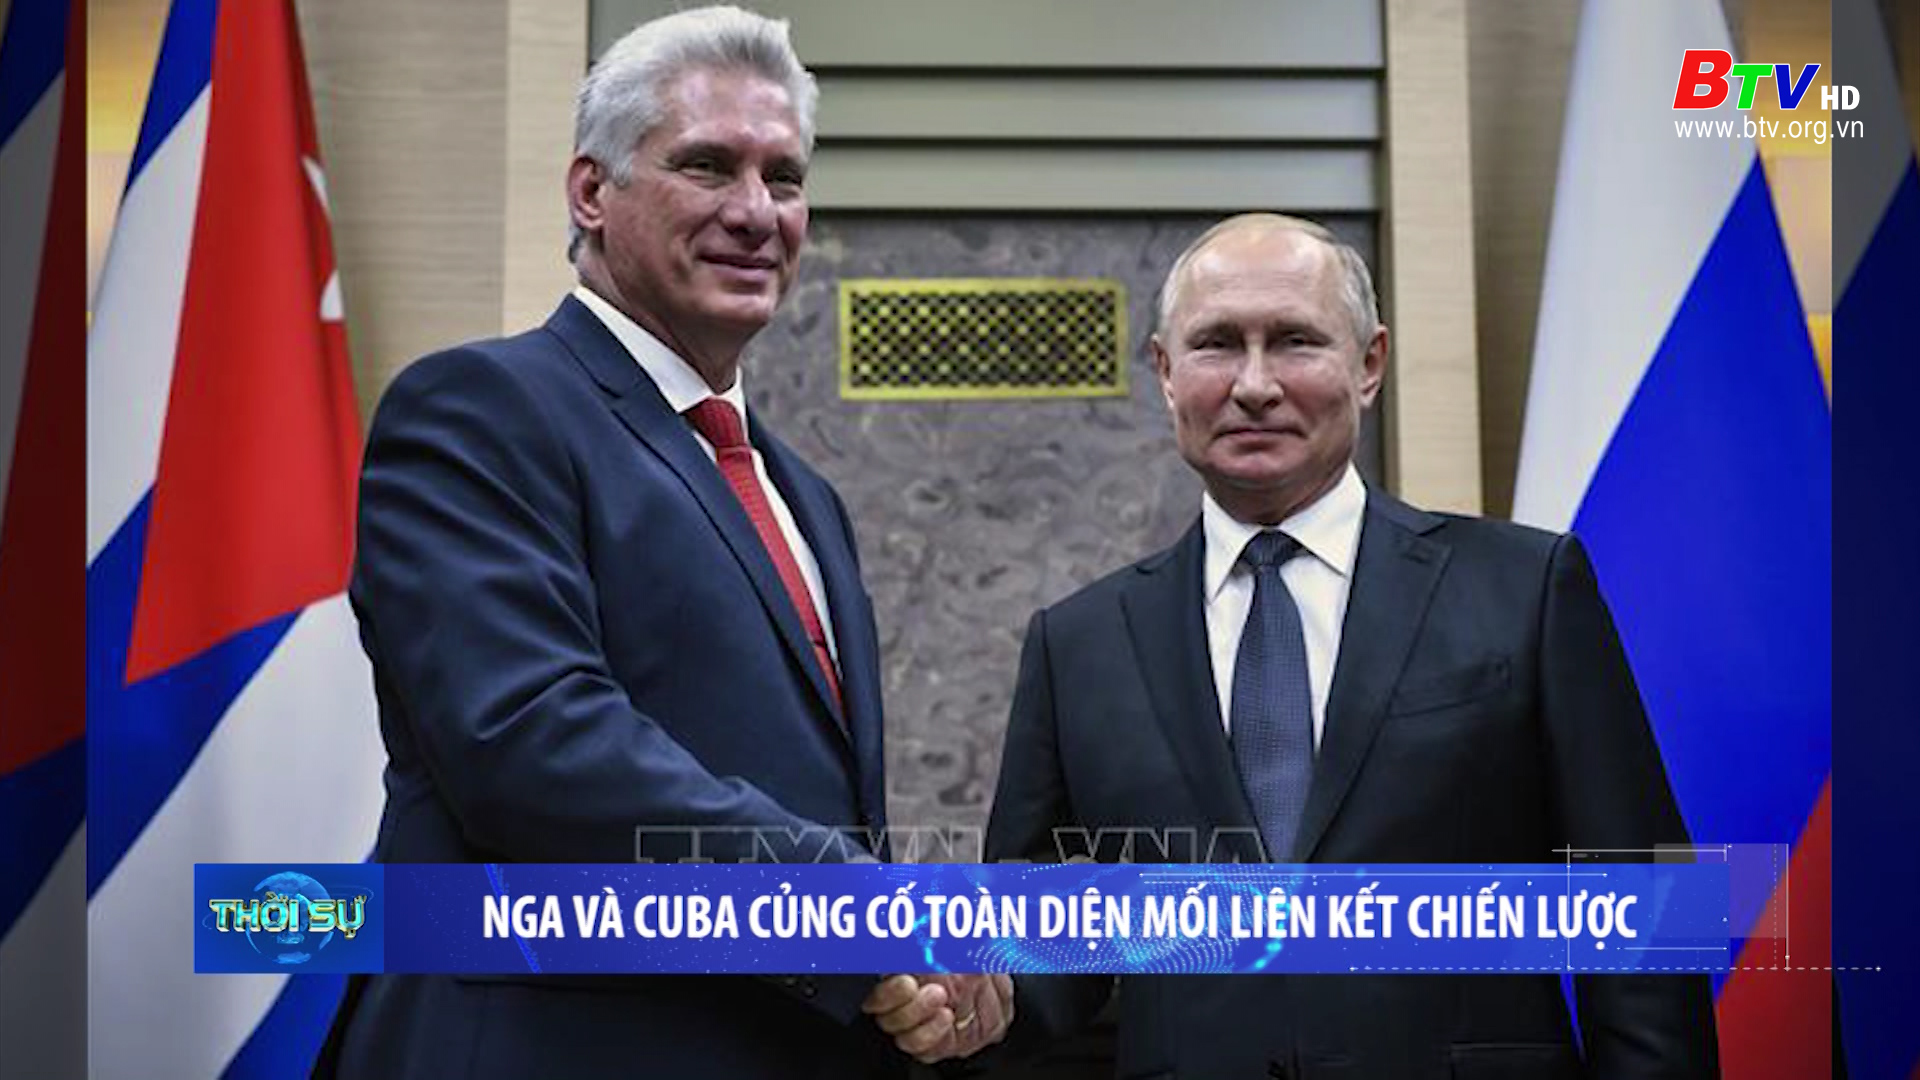 Nga và Cuba củng cố toàn diện mối liên kết chiến lược